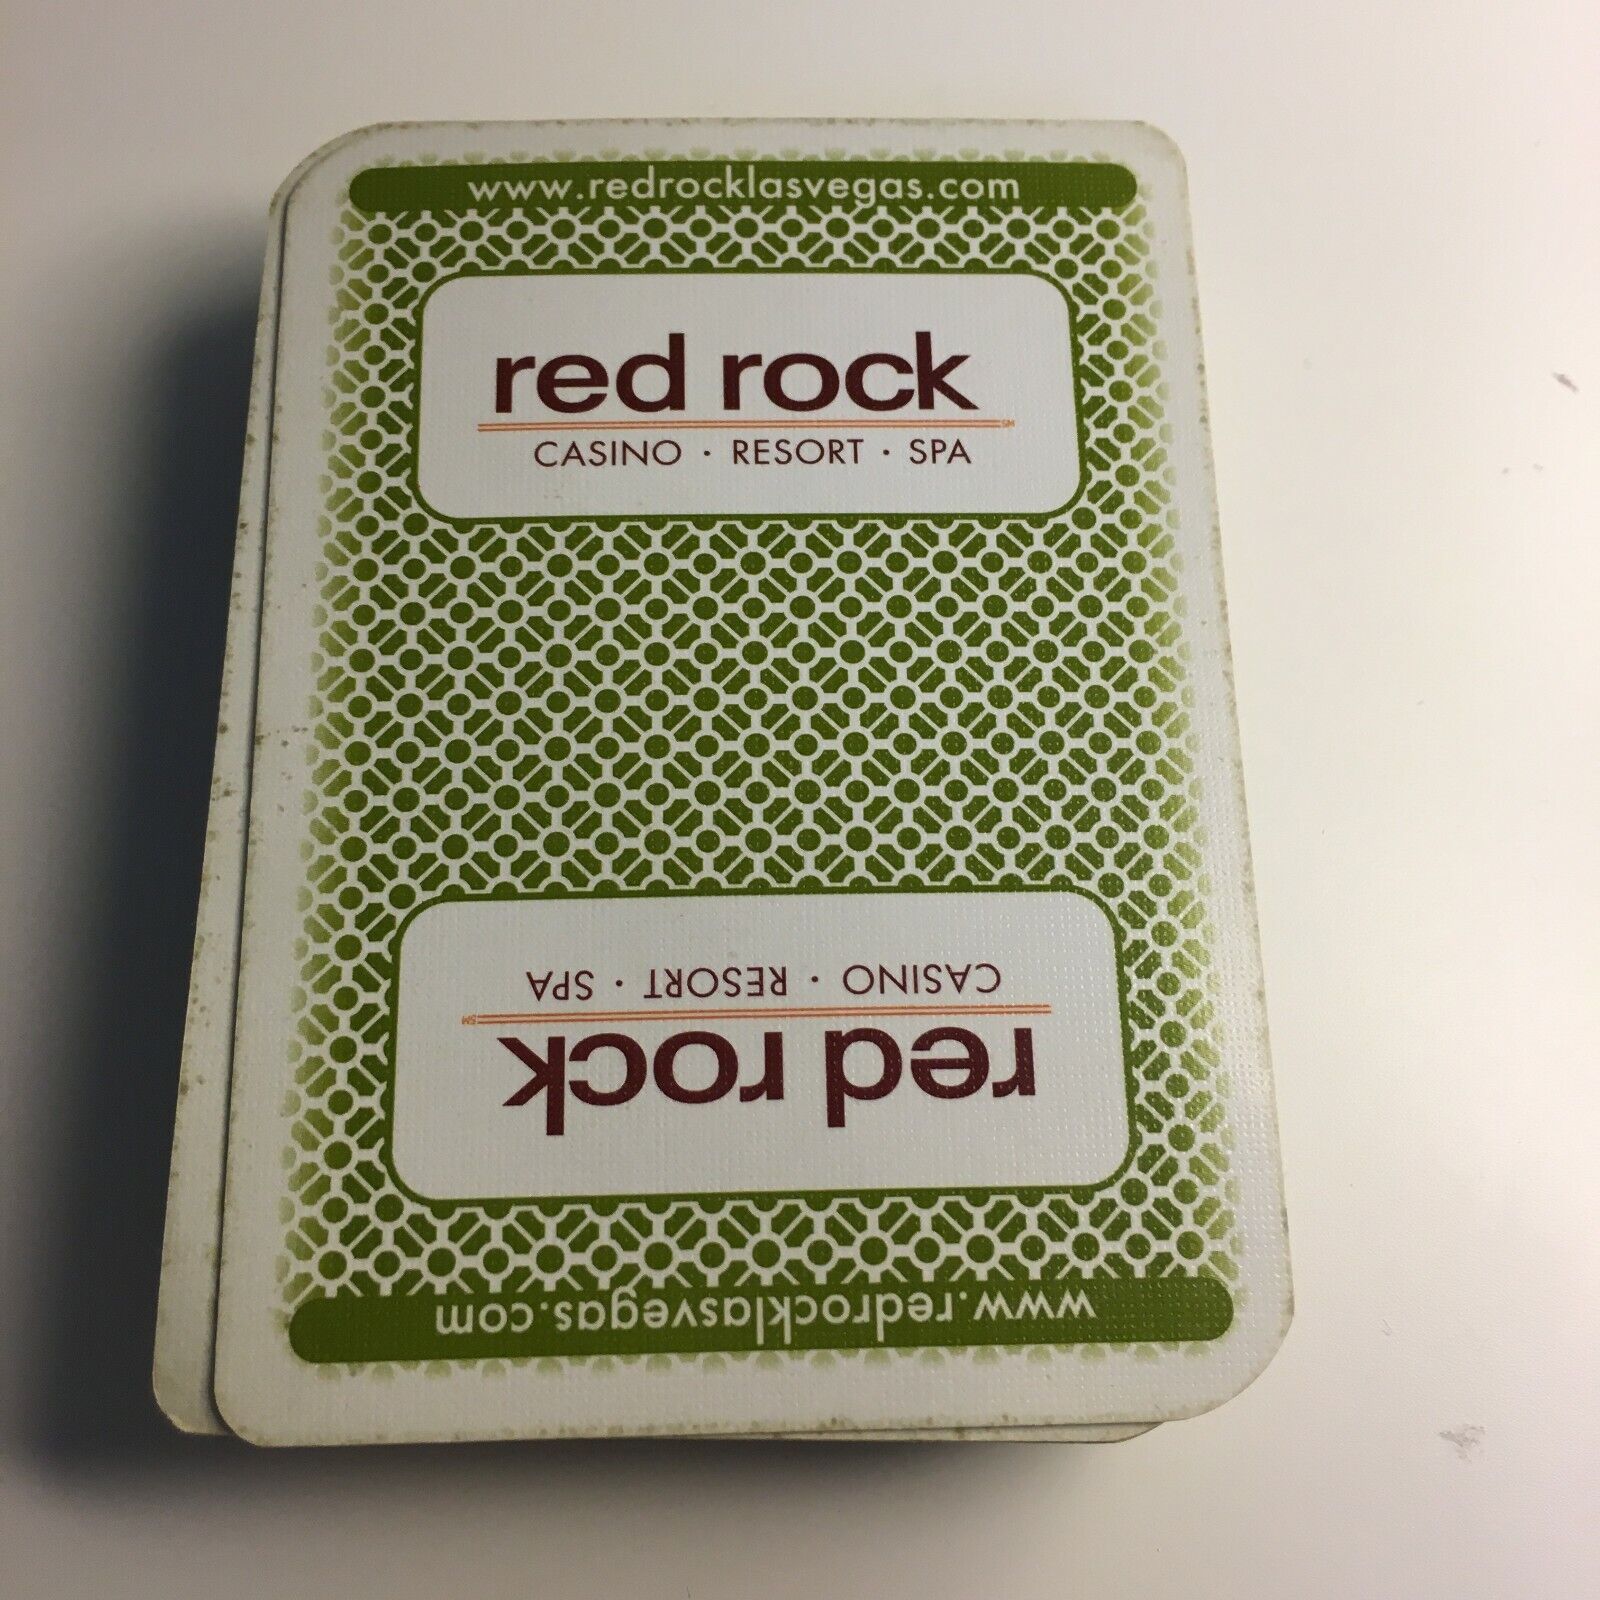 Red Rock Casino Las Vegas Carta Mundi Playing Cards green 